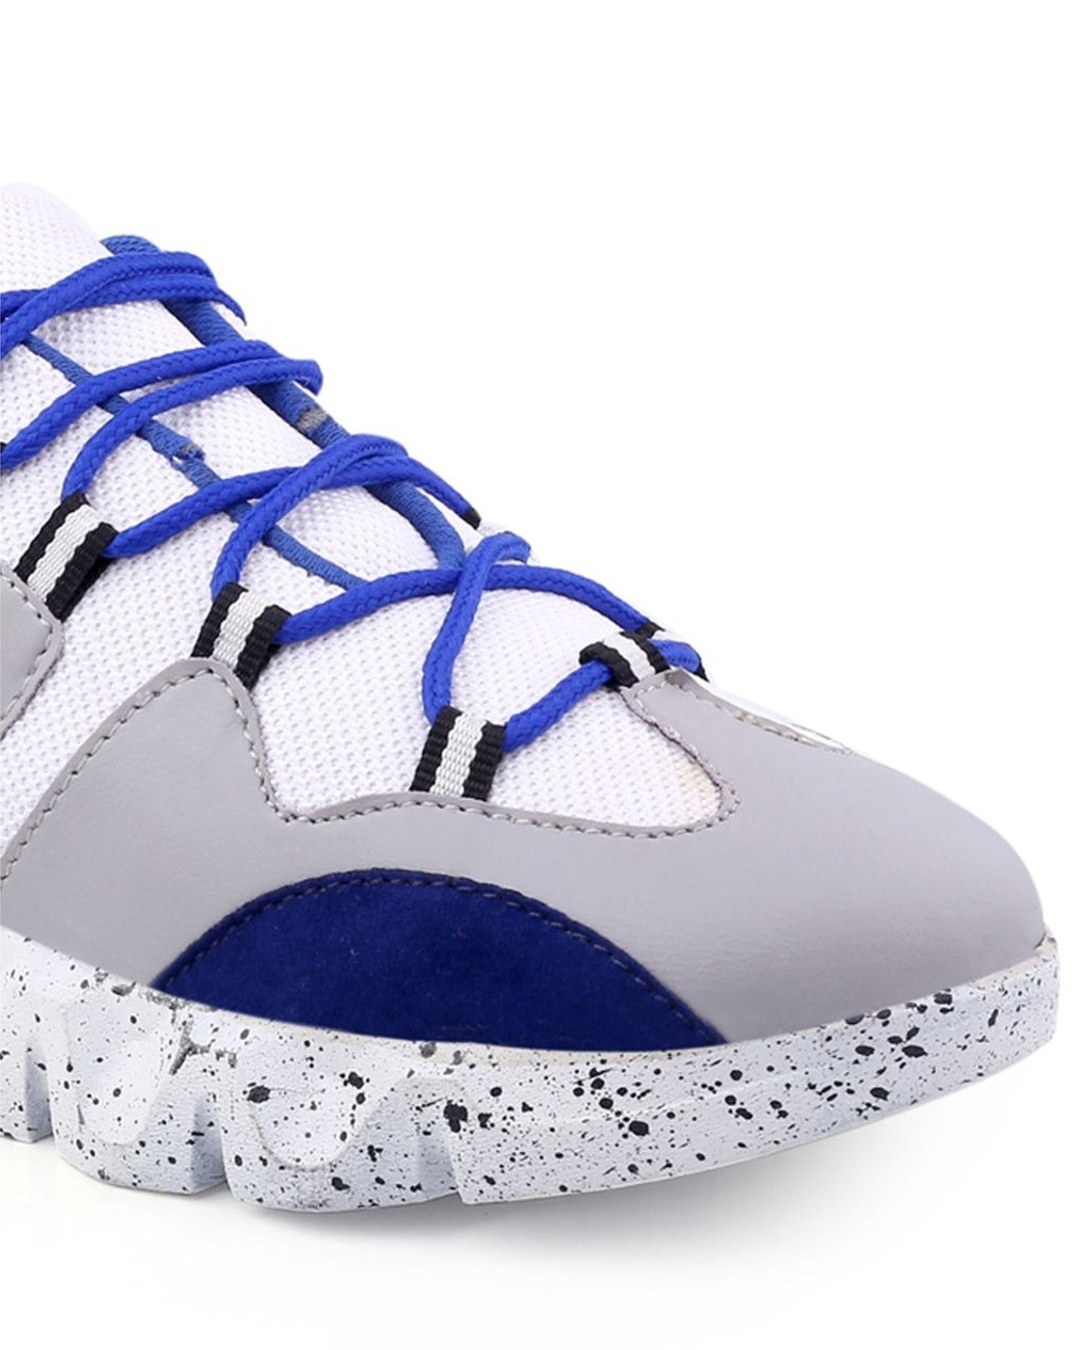 Shop Men's Blue & Grey Color Block Lace Up Sneakers